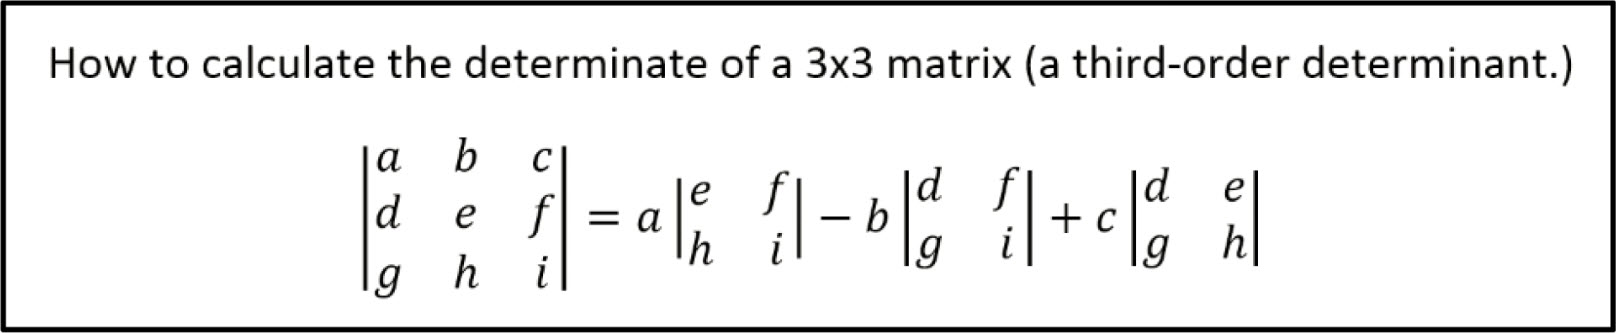 Determinate of 3x3 Matrix Notes